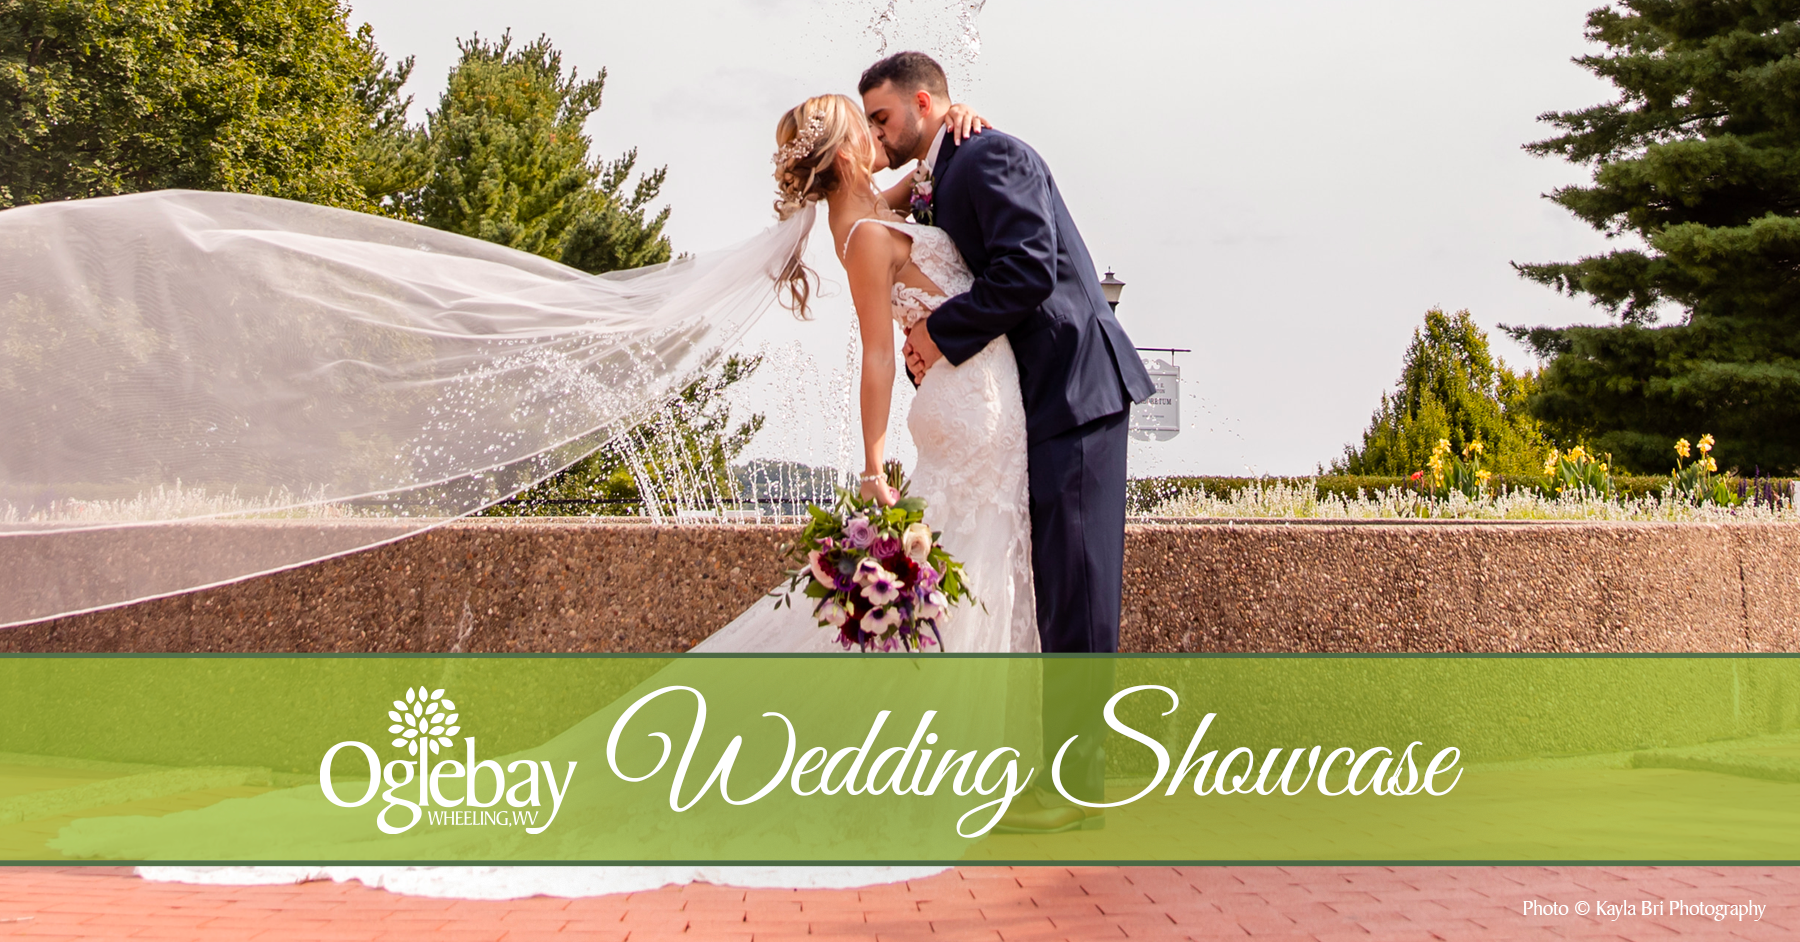 Oglebay Wedding Showcase header photo